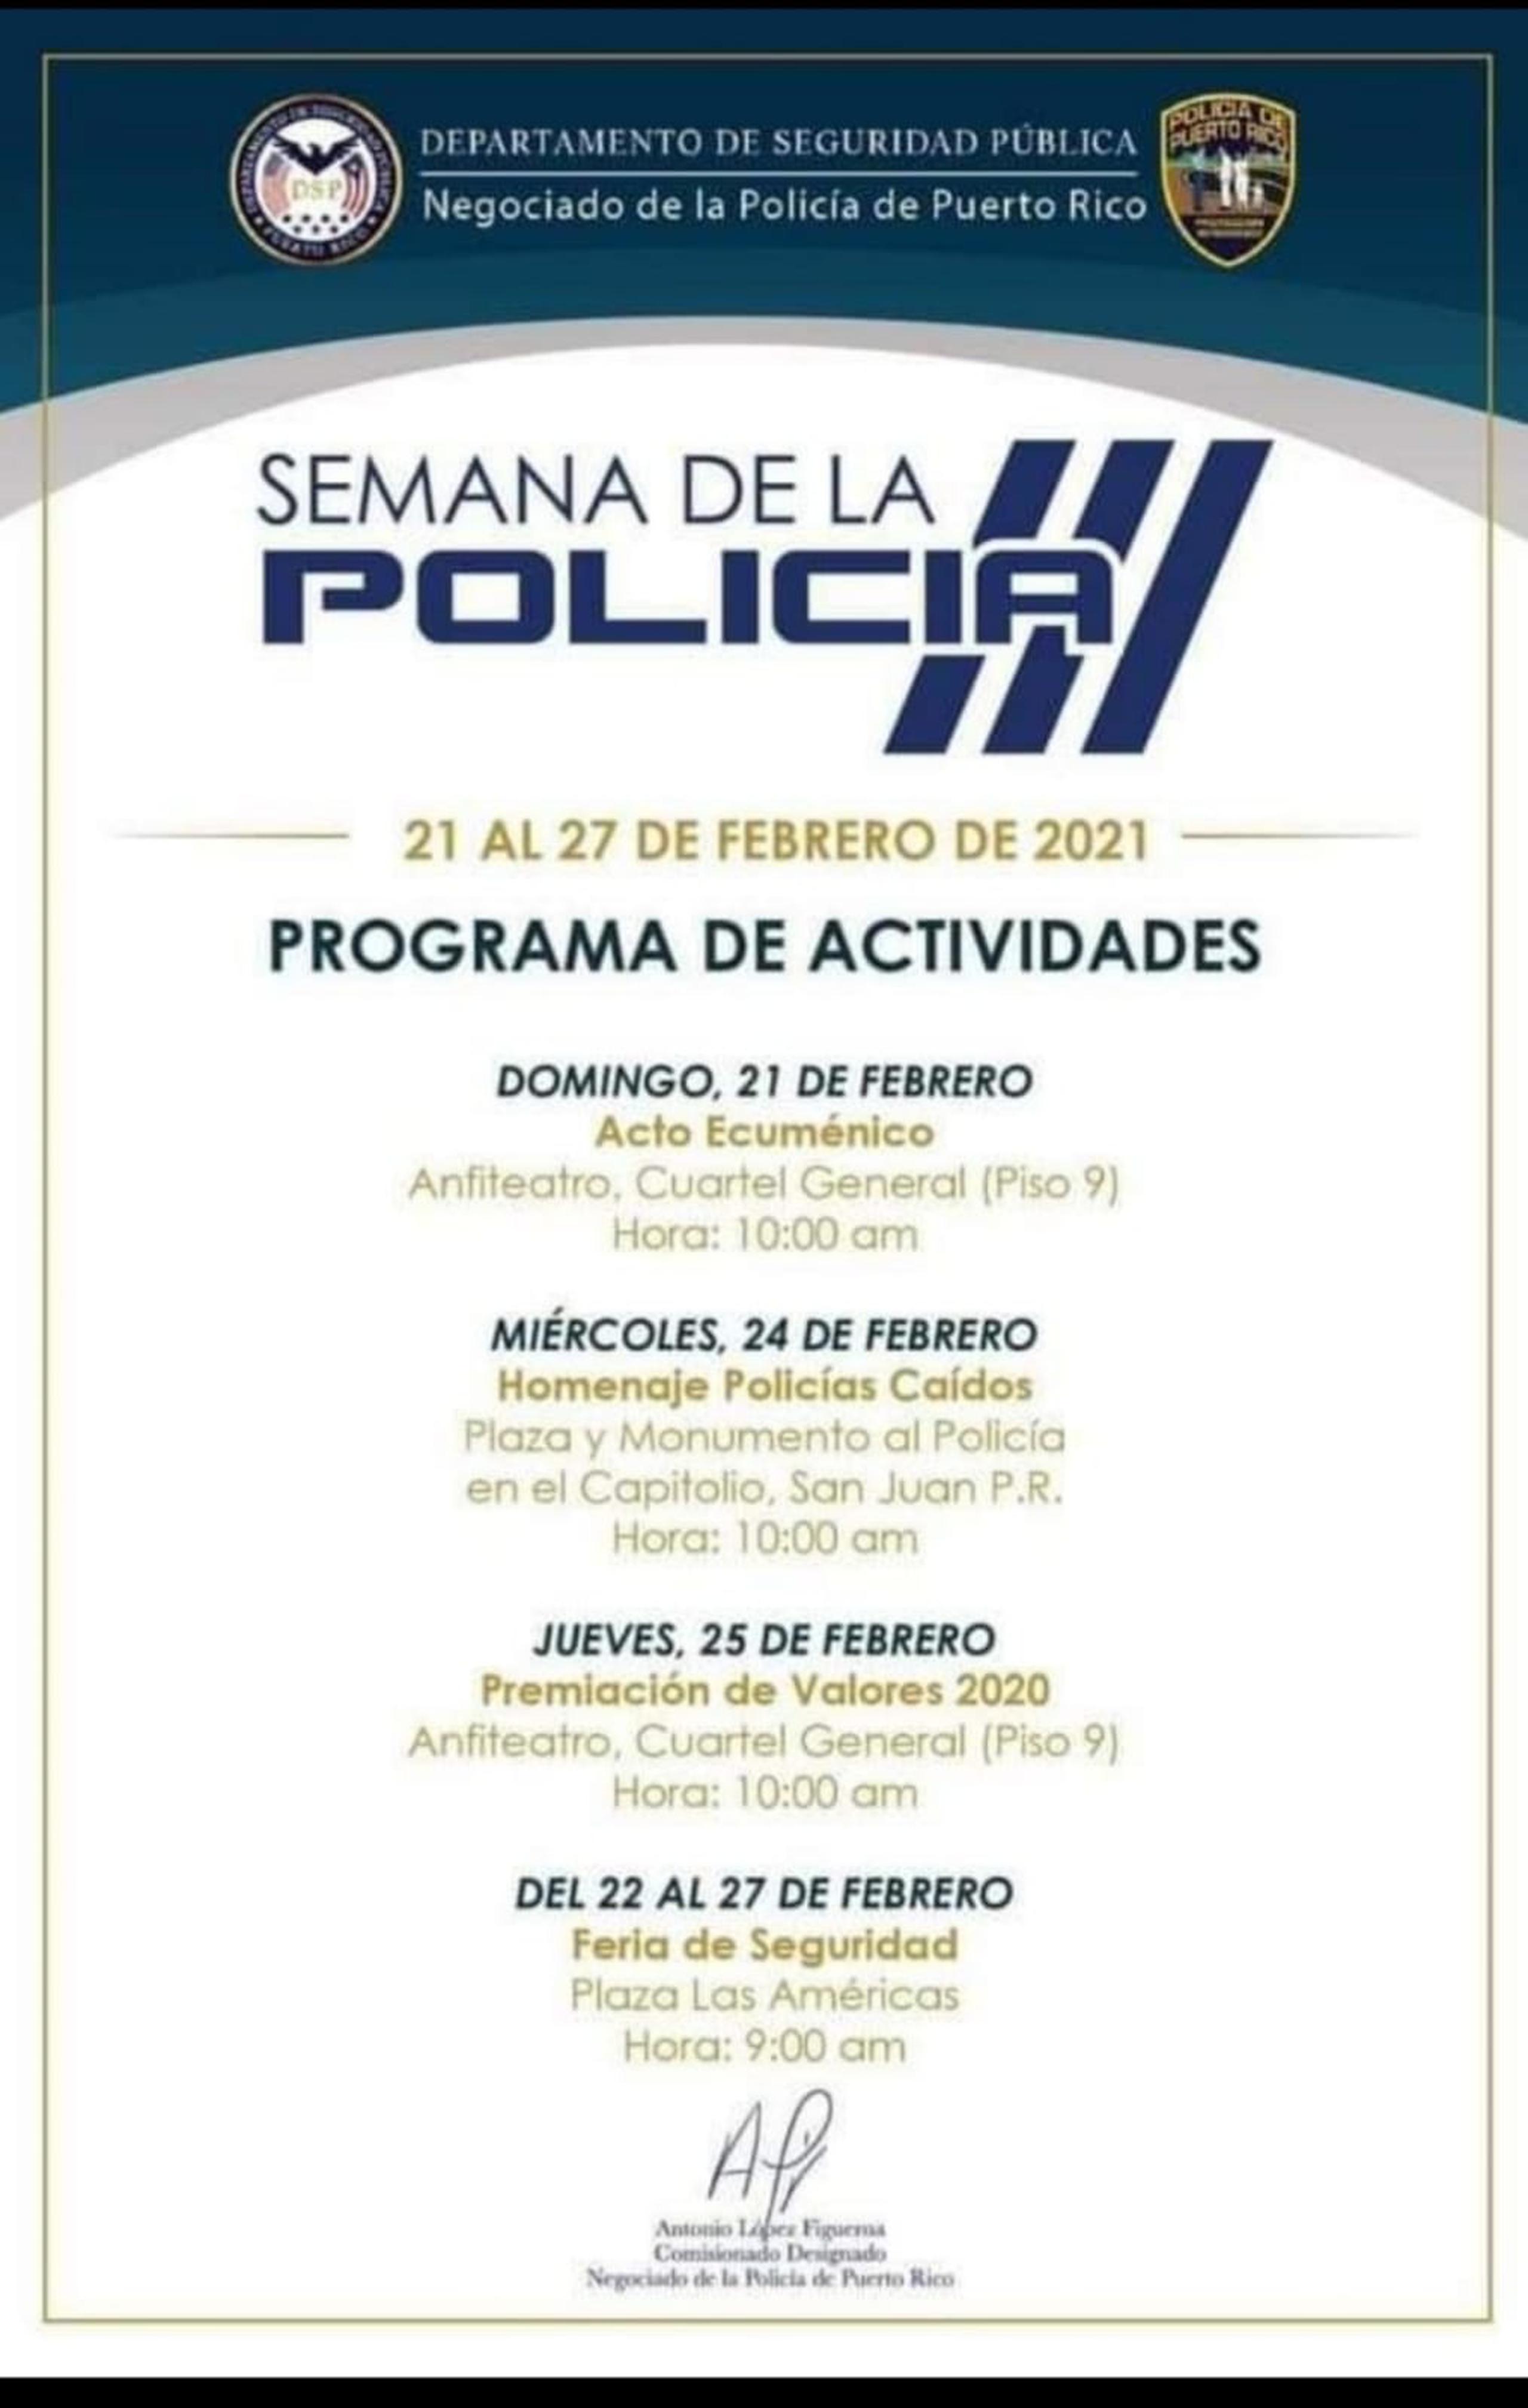 El itinerario de la Semana de la Policía de Puerto Rico, que se conmemora del 21 al 27 de febrero, se limitará este año a tres actividades oficiales.